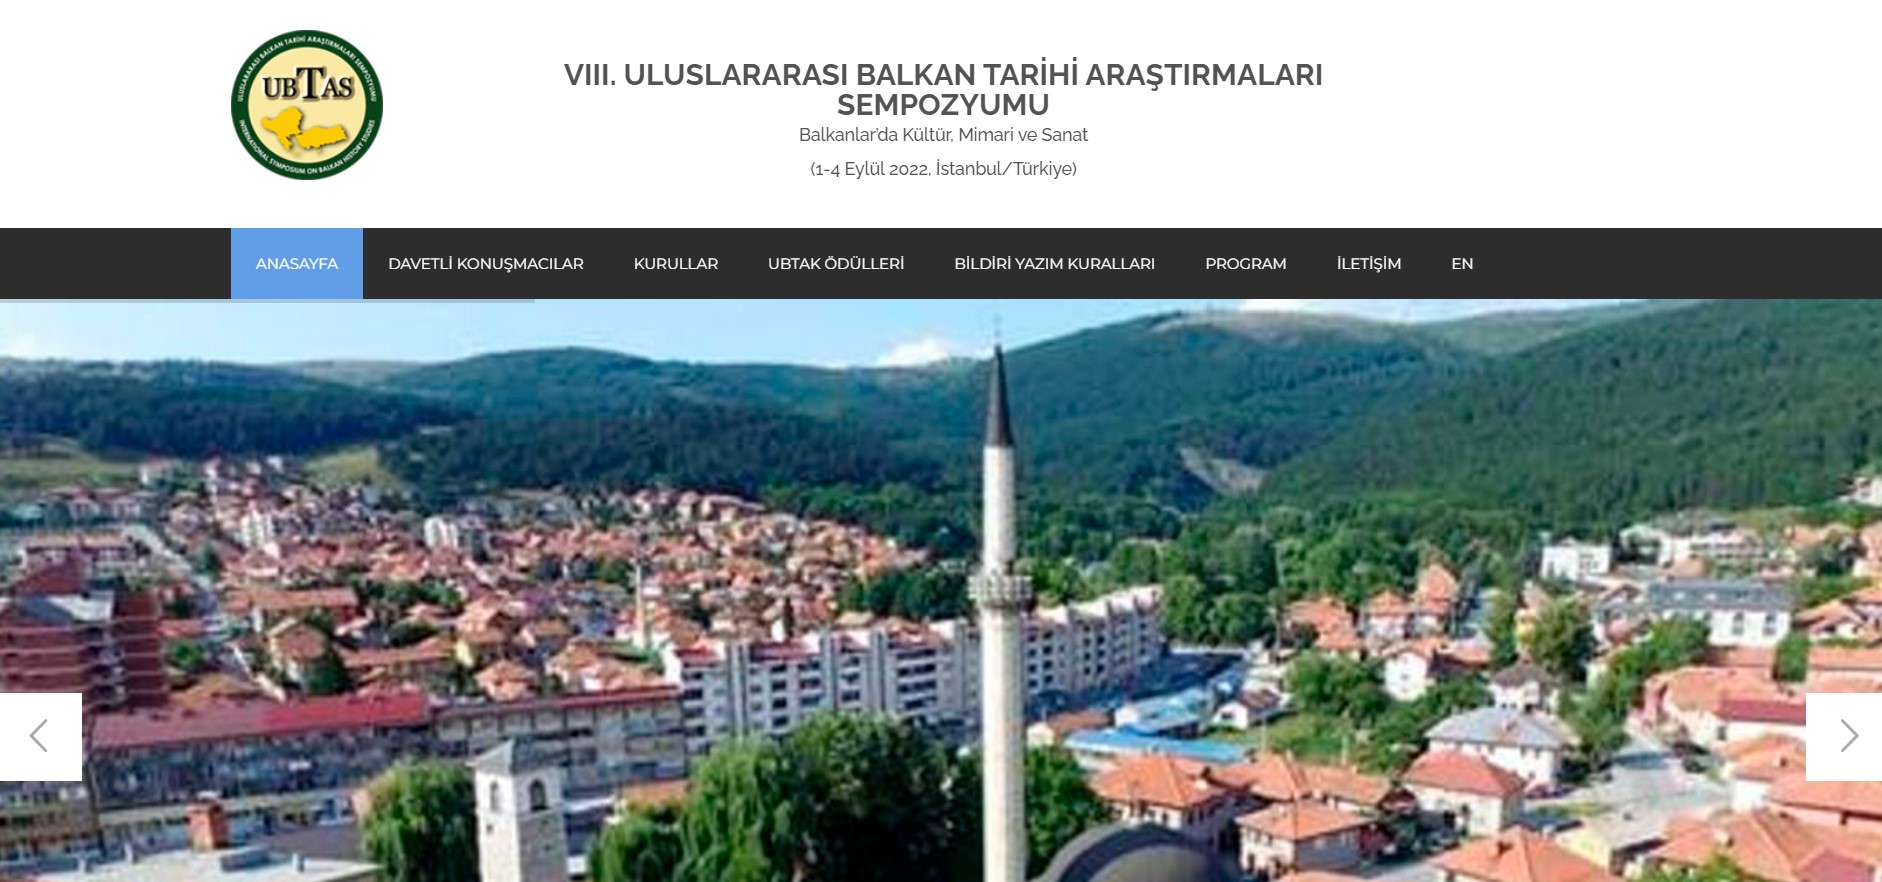 8. Uluslararası Balkan Tarihi Araştırmaları Sempozyumu